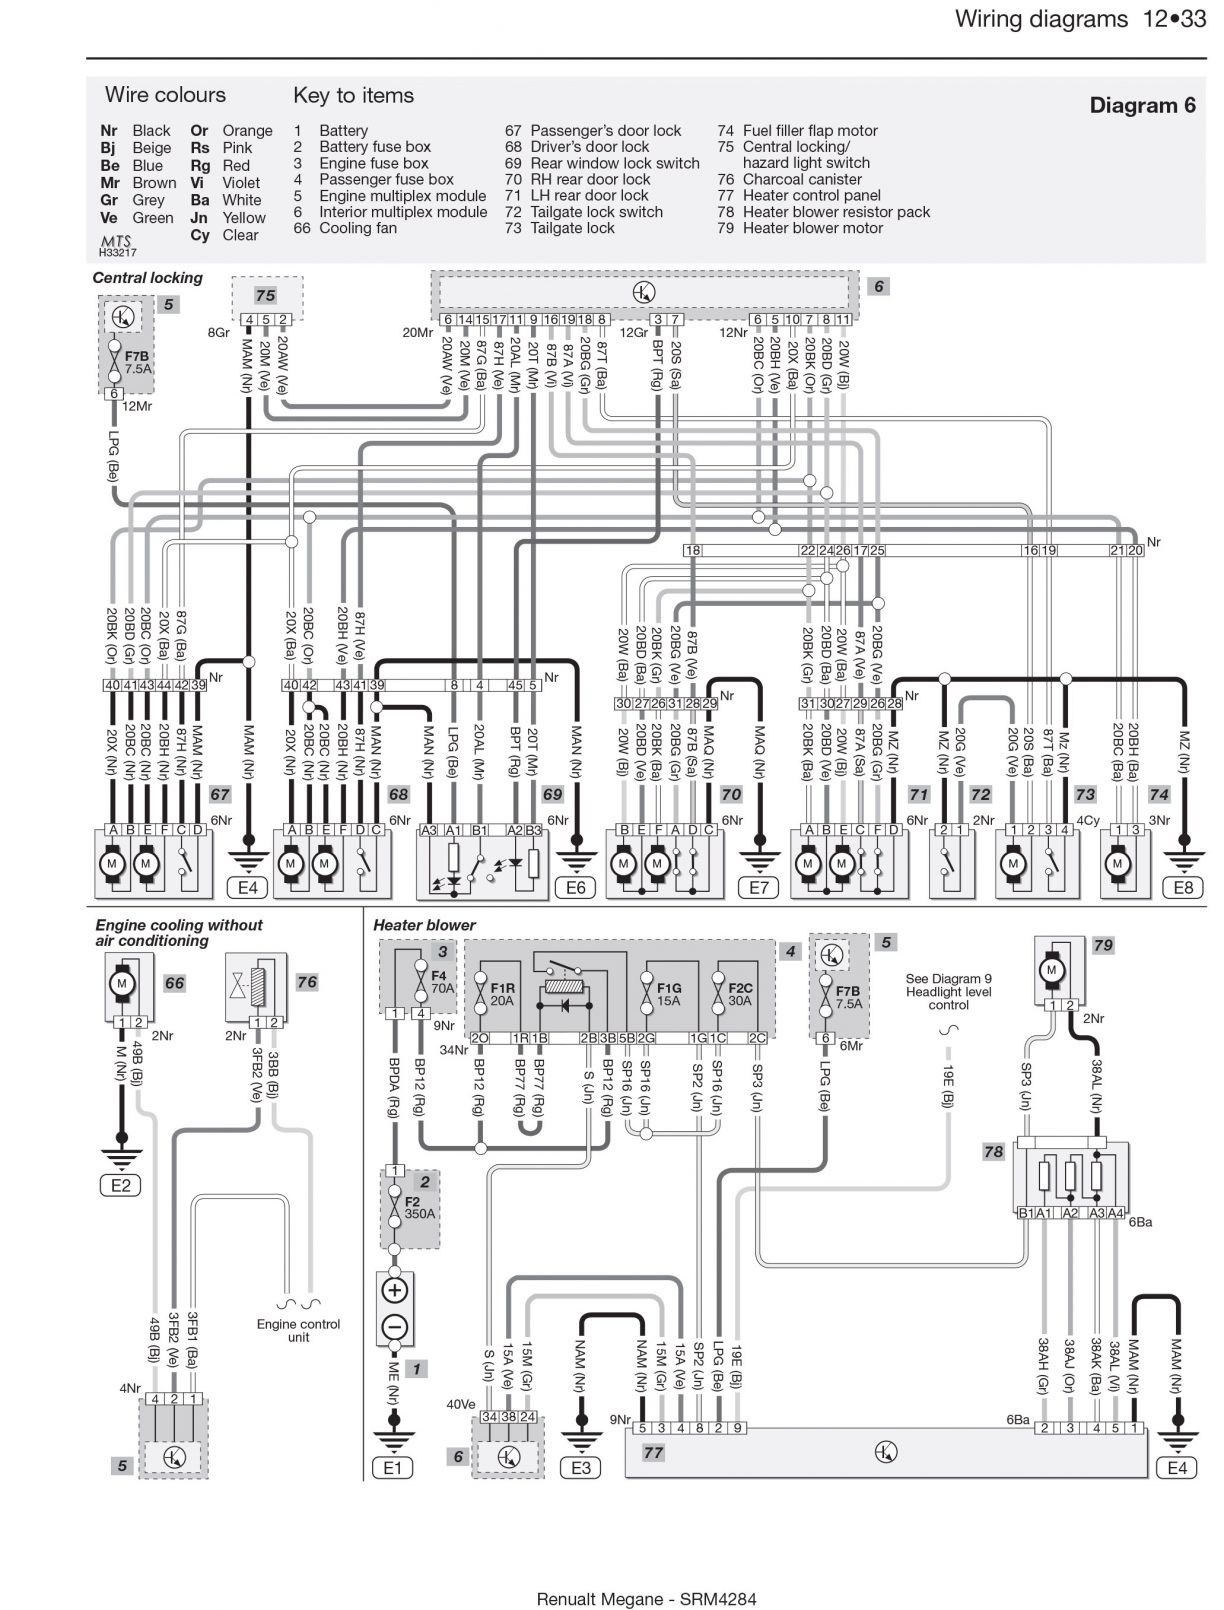 Daihatsu Hijet Engine Diagram Daihatsu Charade Wiring Diagram Daihatsu Wiring Diagrams Instructions Of Daihatsu Hijet Engine Diagram